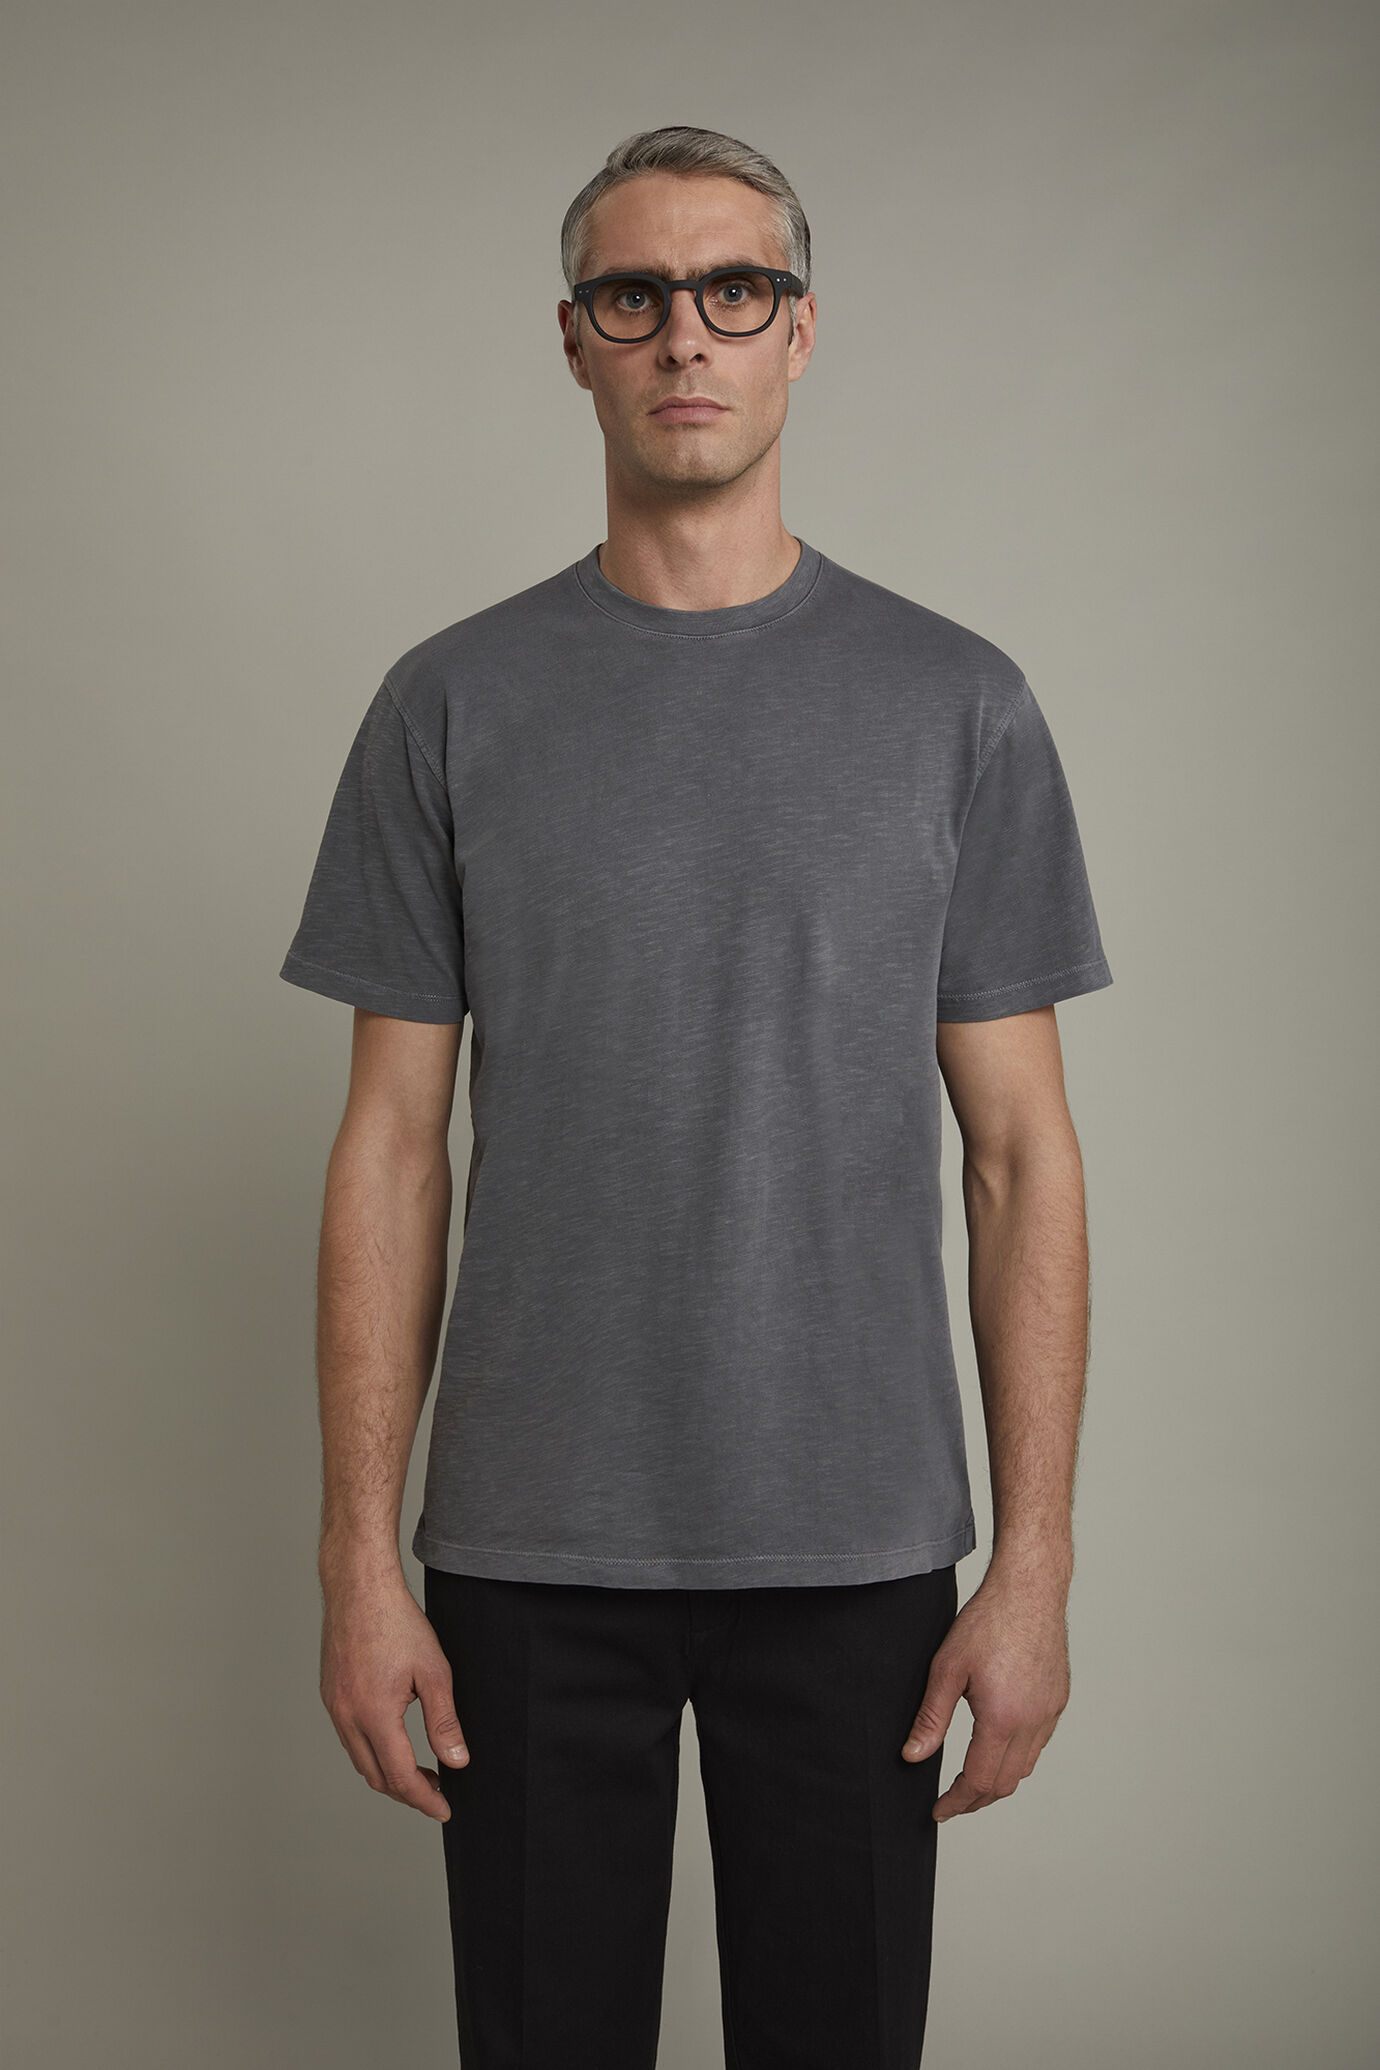 Herren-T-Shirt mit Rundhalsausschnitt aus 100 % Slub-Baumwolle in normaler Passform